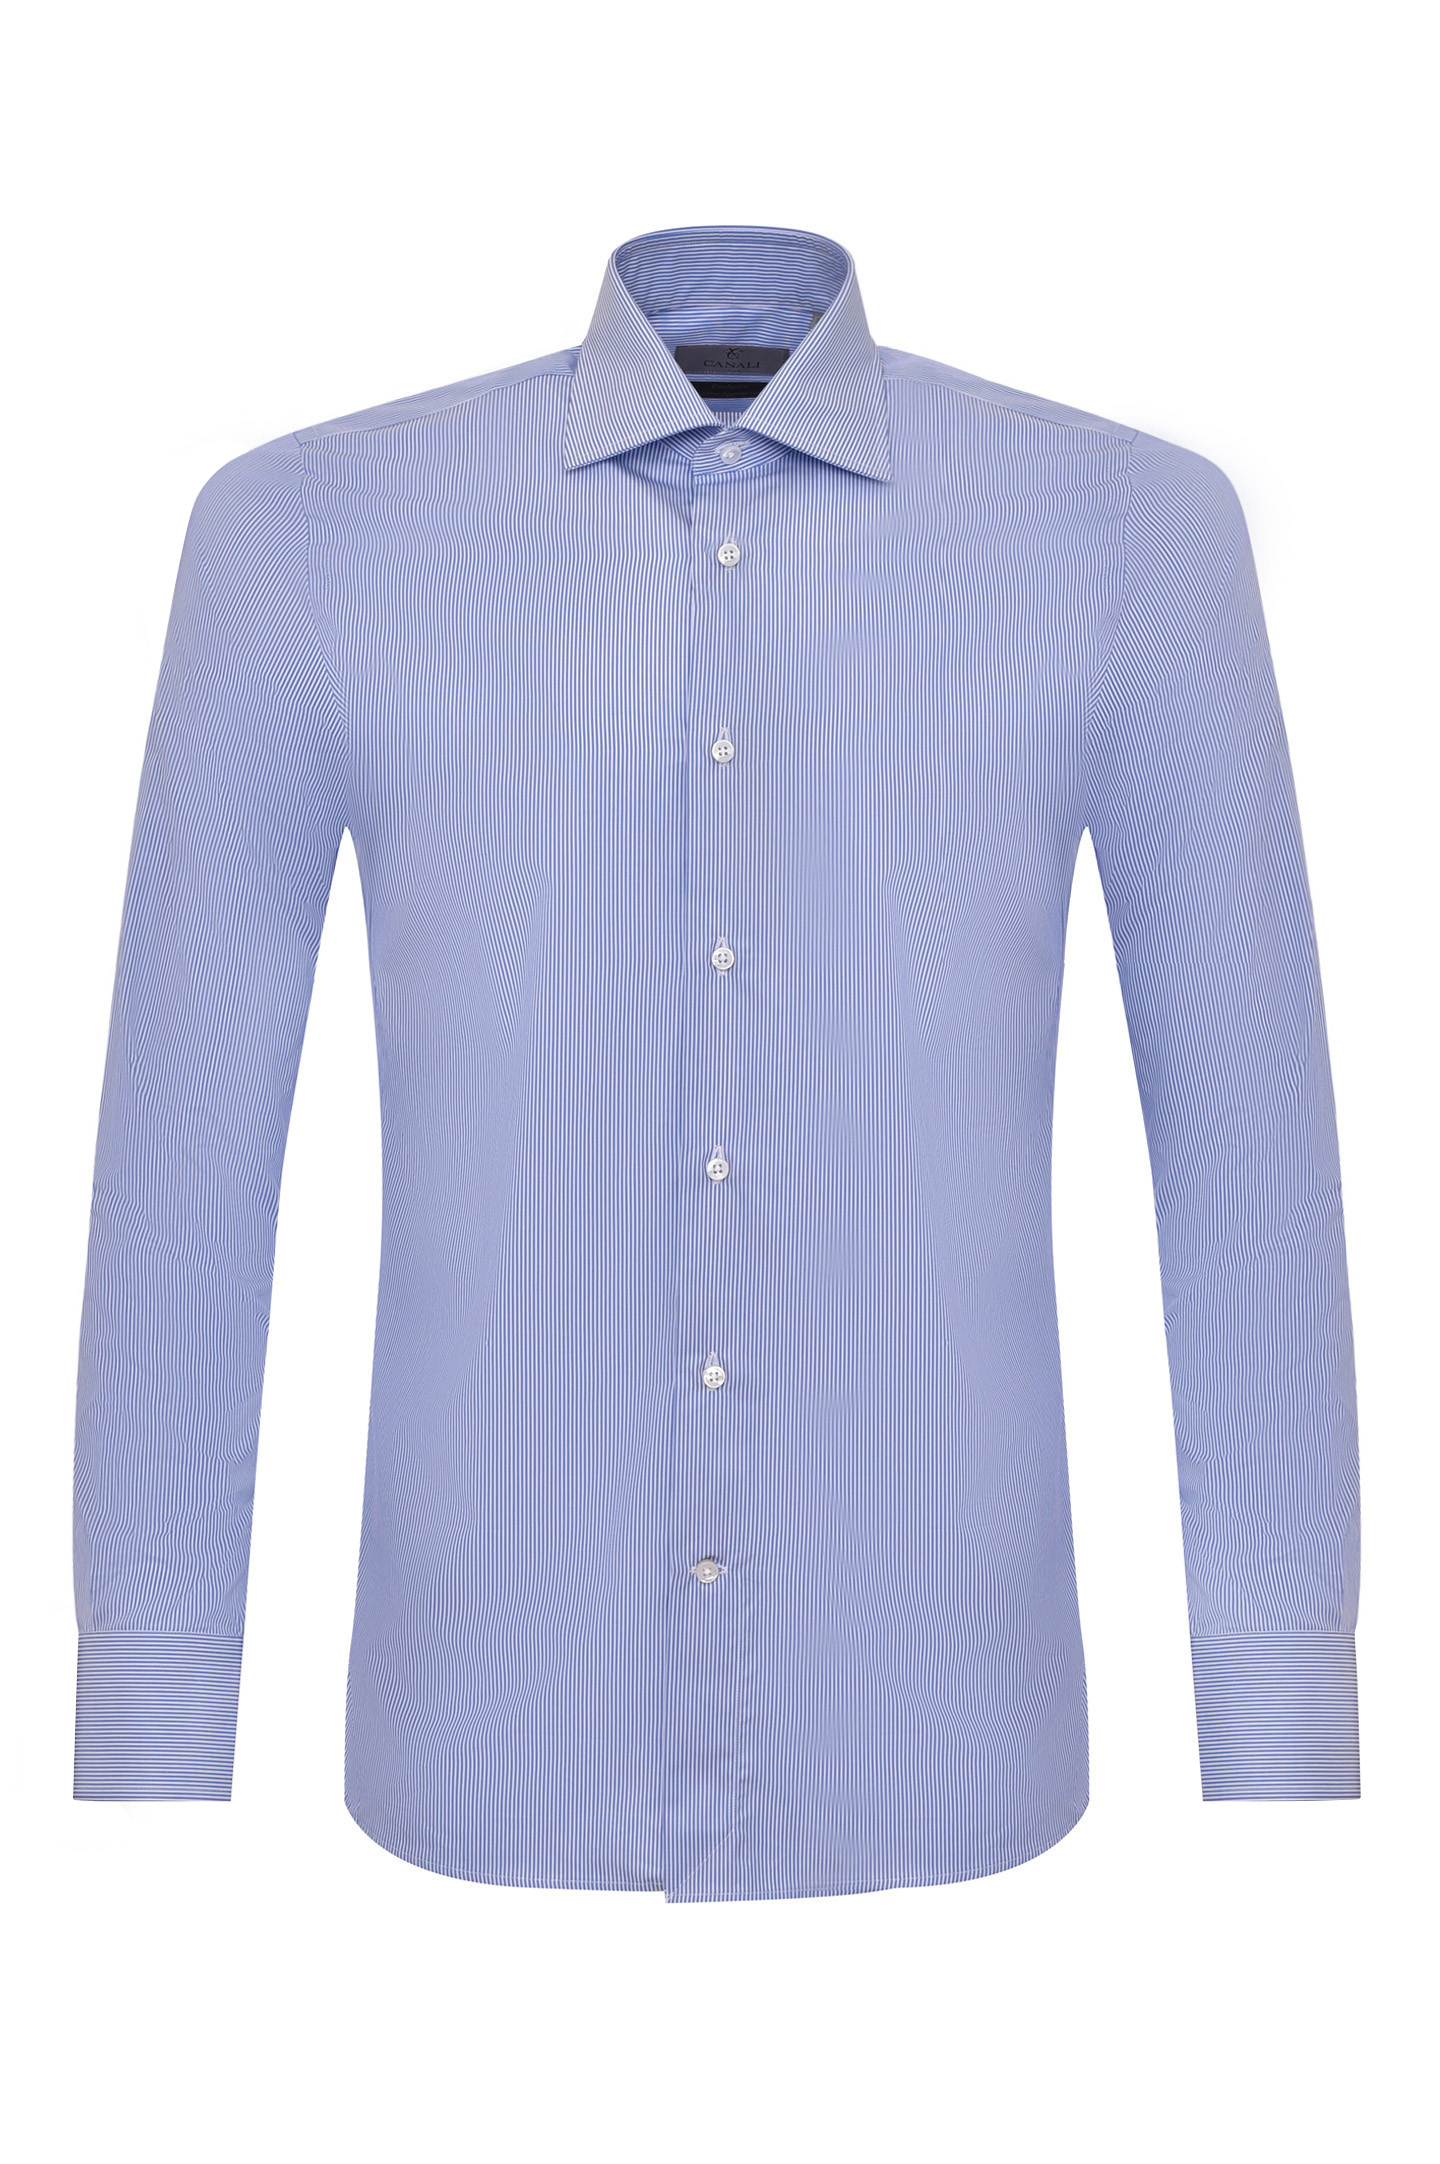 Рубашка CANALI GX02356 7718, цвет: Синий, Мужской